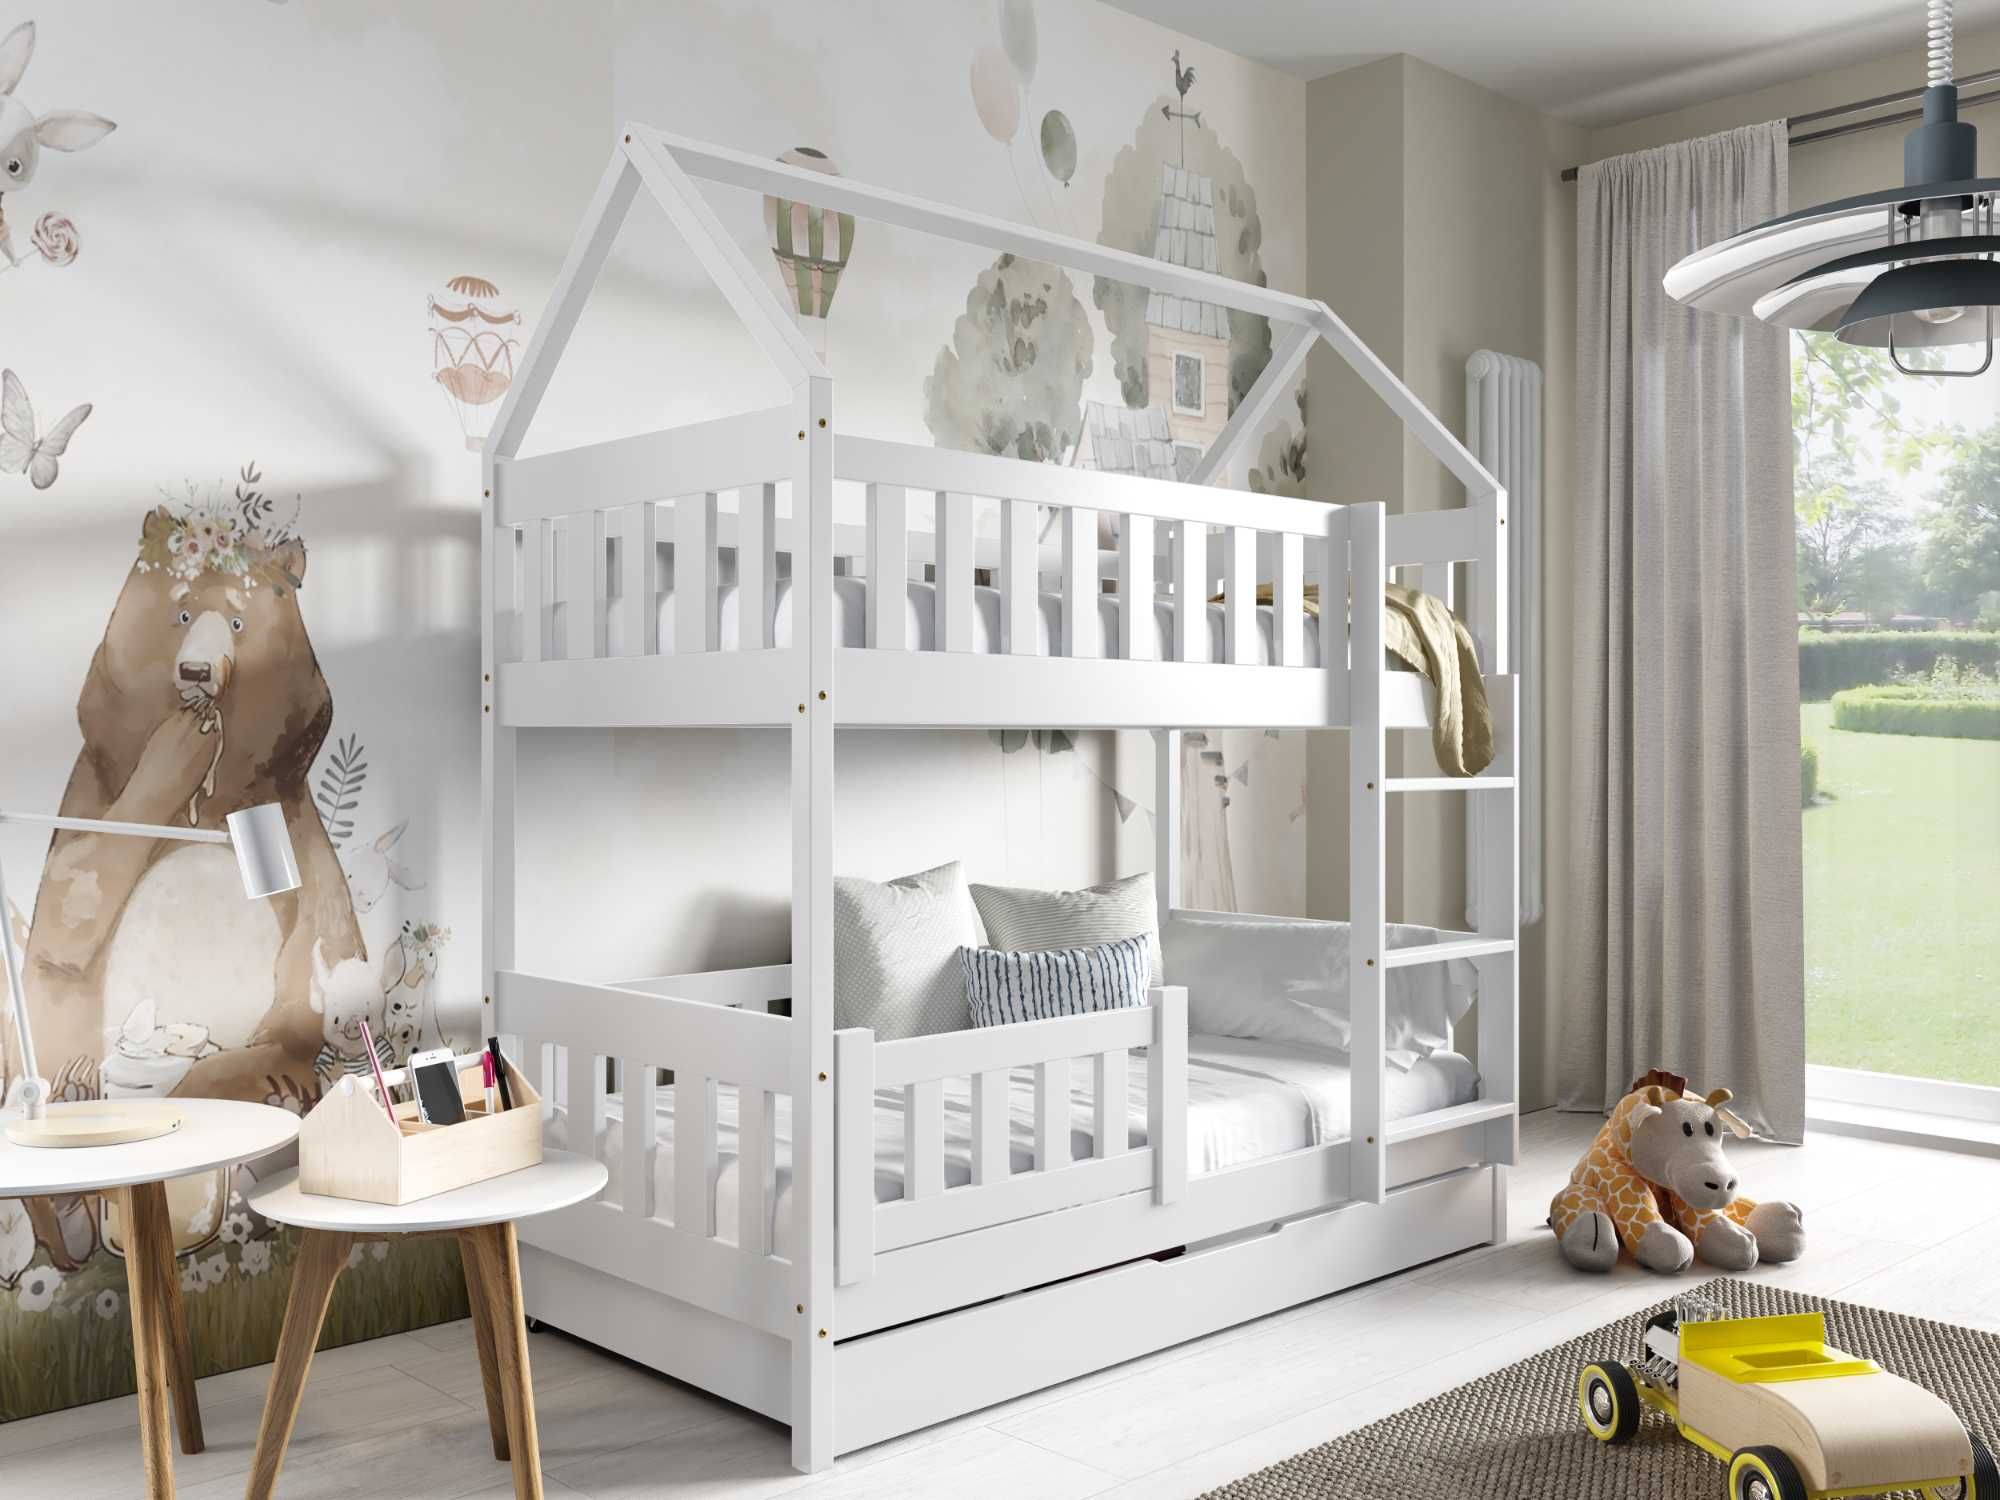 Łóżko dla dzieci domek piętrowe 160x80 z materacami